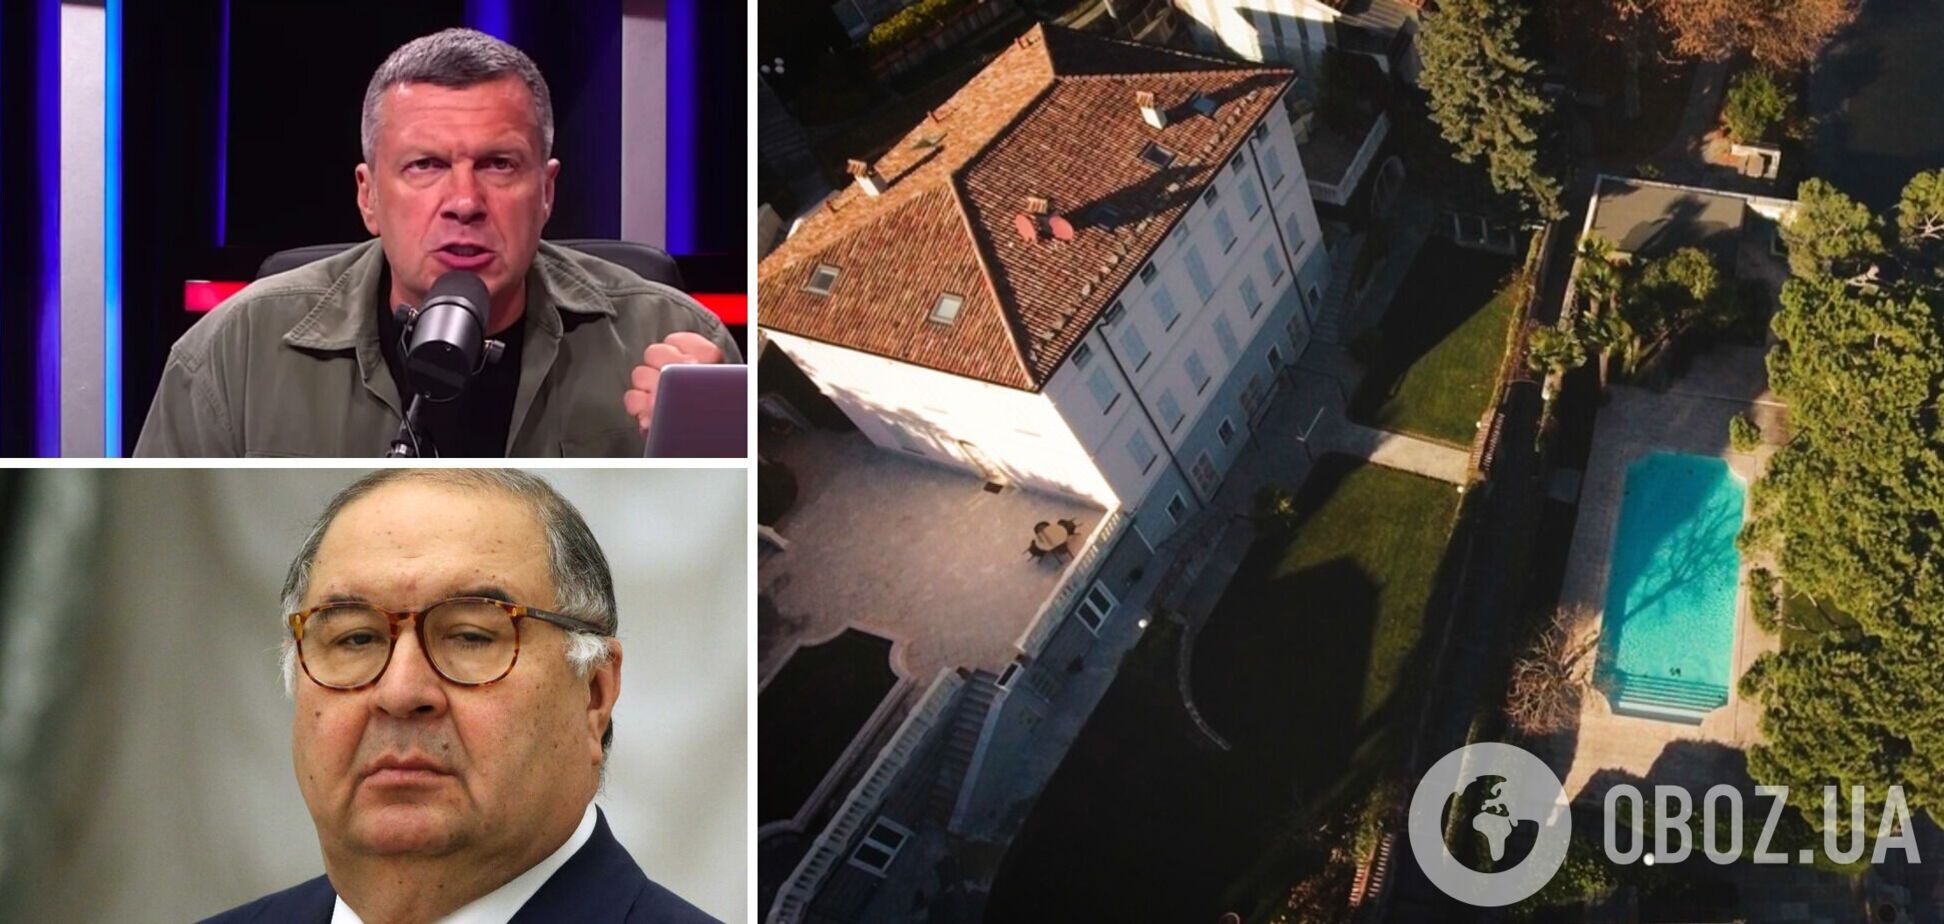 Соловьев и Усманов лишились элитной недвижимости в Италии